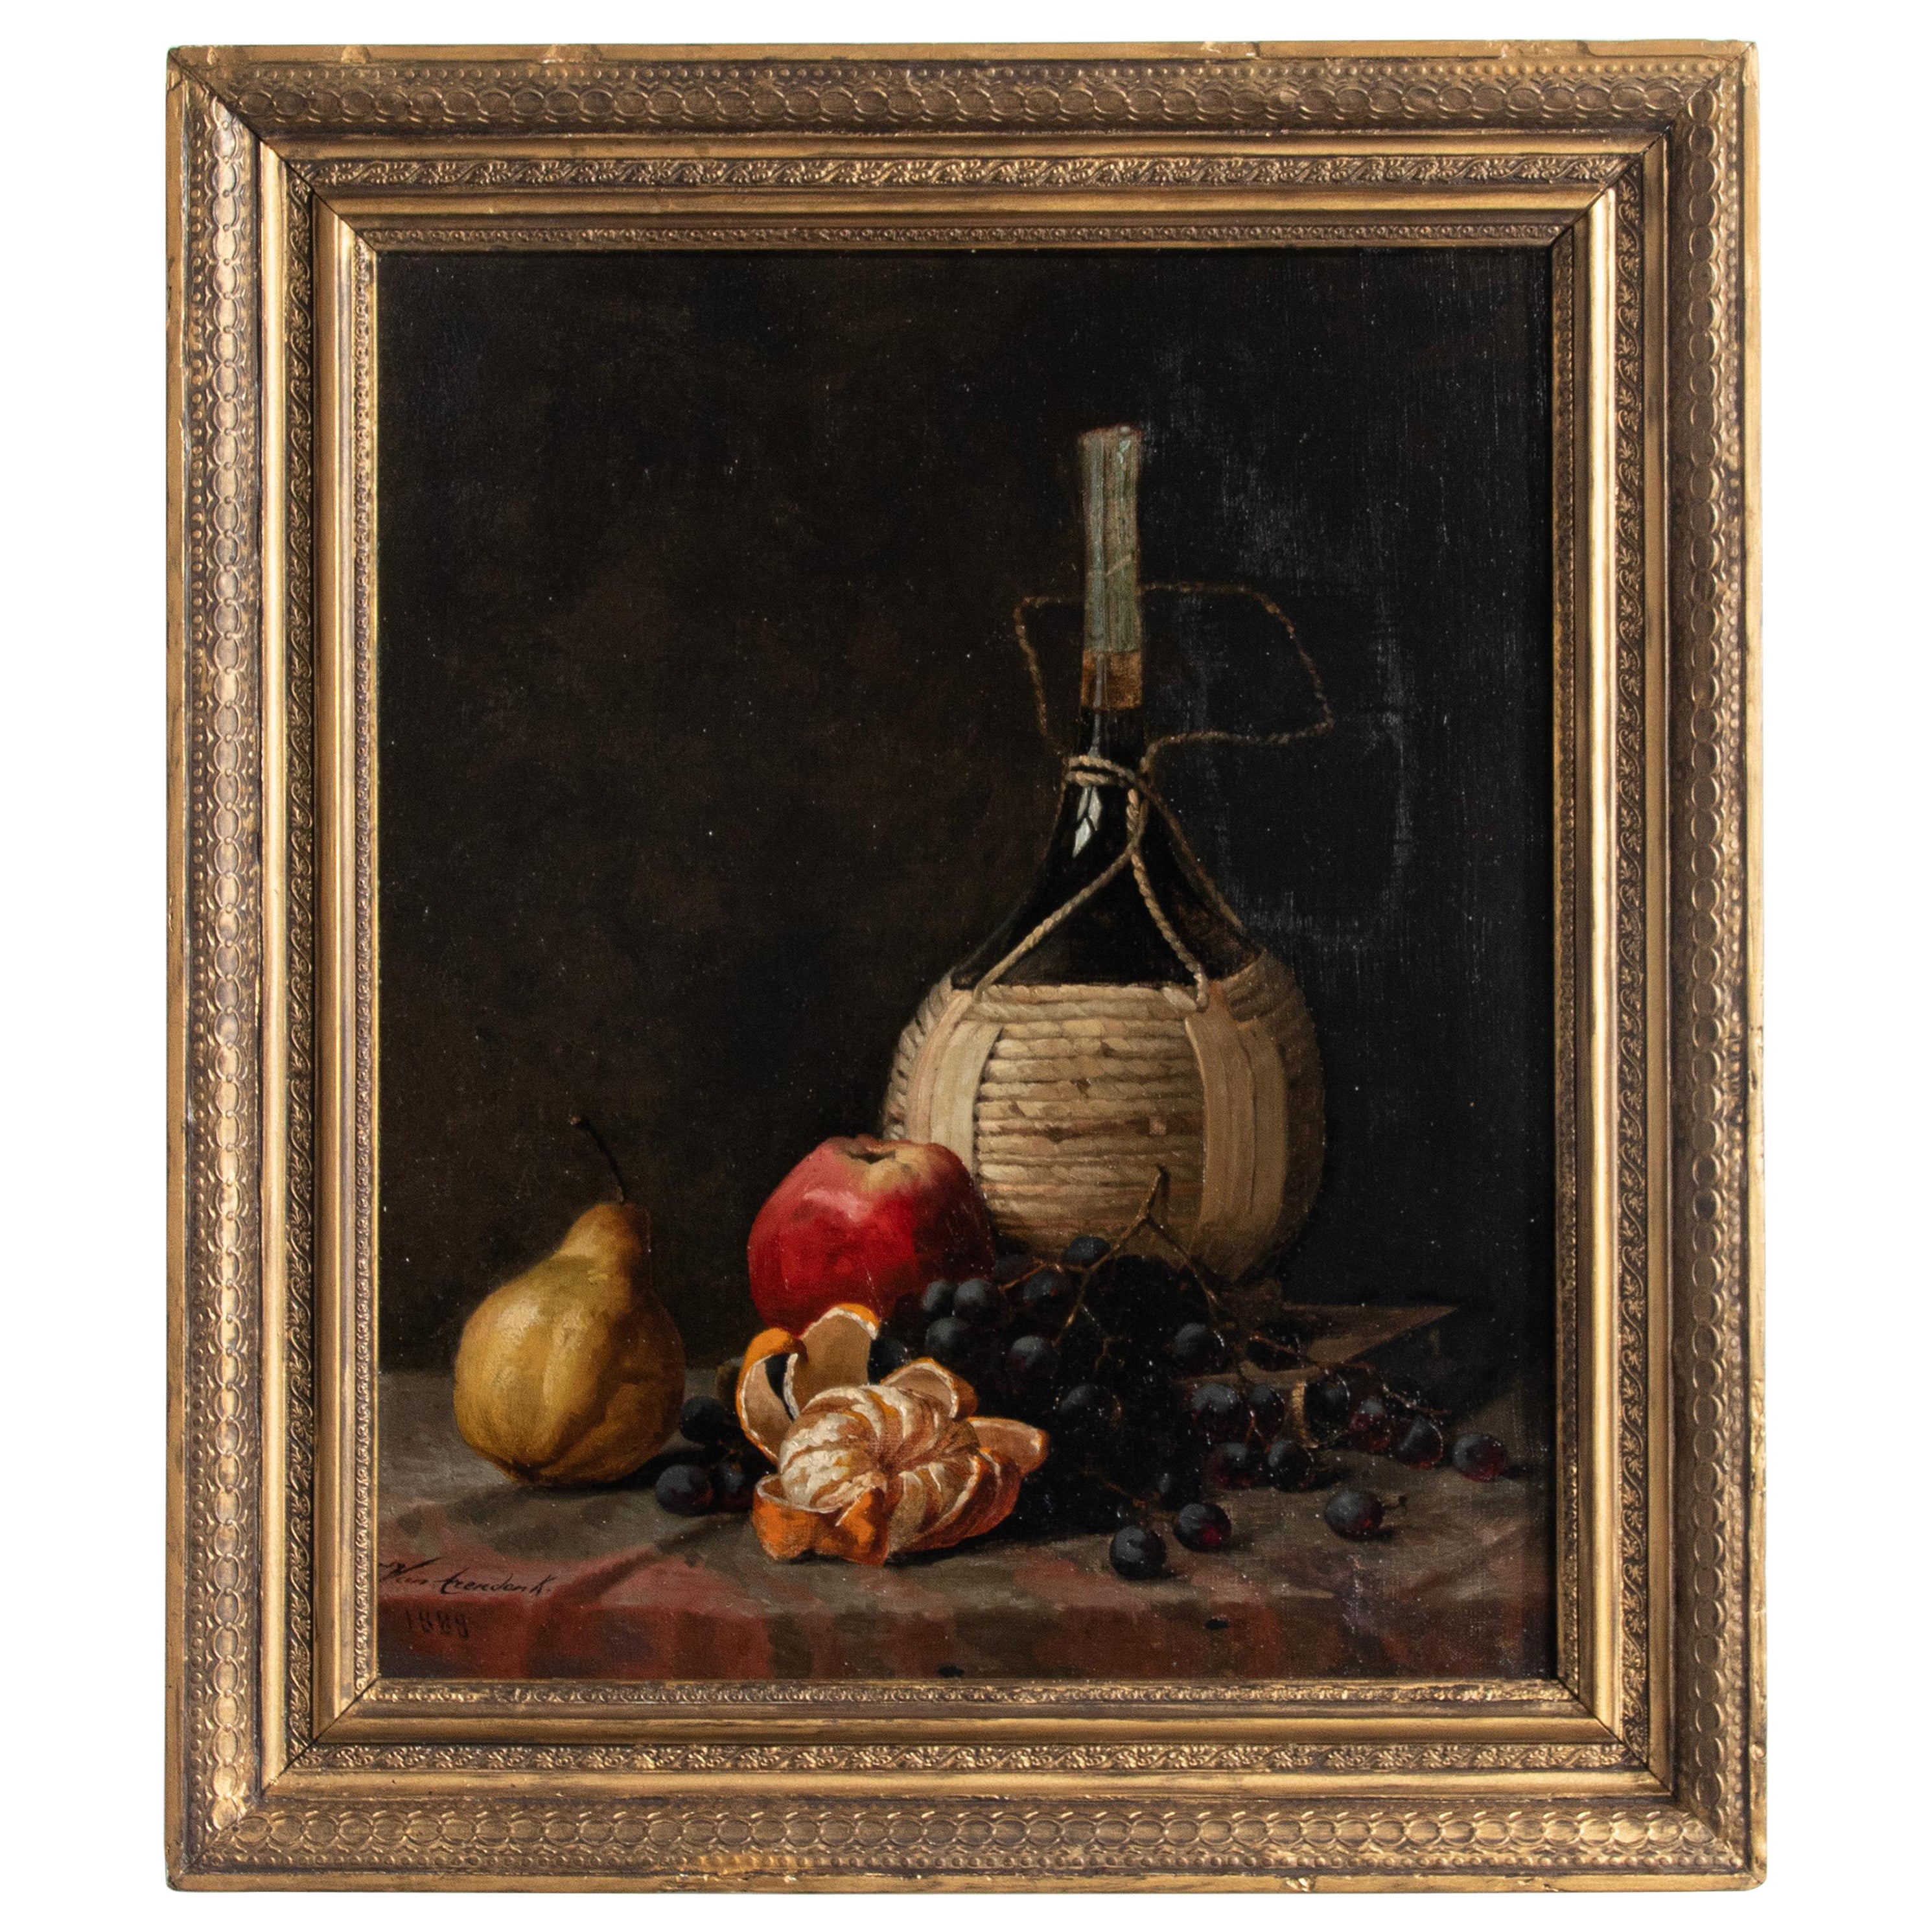 Obststillleben des späten 19. Jahrhunderts, Ölgemälde von Van Arendonk